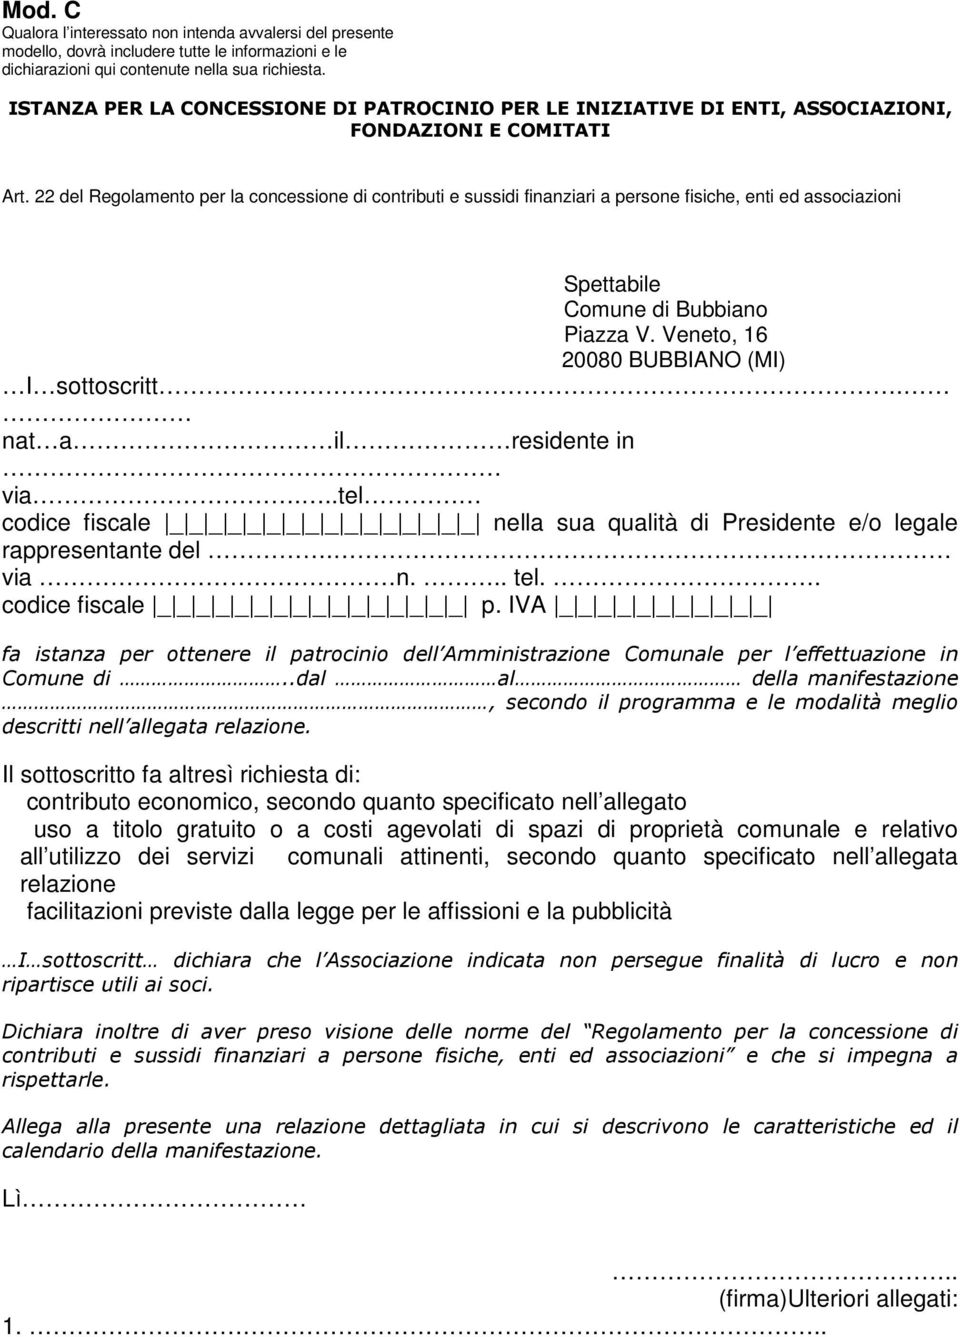 22 del Regolamento per la concessione di contributi e sussidi finanziari a persone fisiche, enti ed associazioni Spettabile Comune di Bubbiano Piazza V. Veneto, 16 20080 BUBBIANO (MI) I sottoscritt.